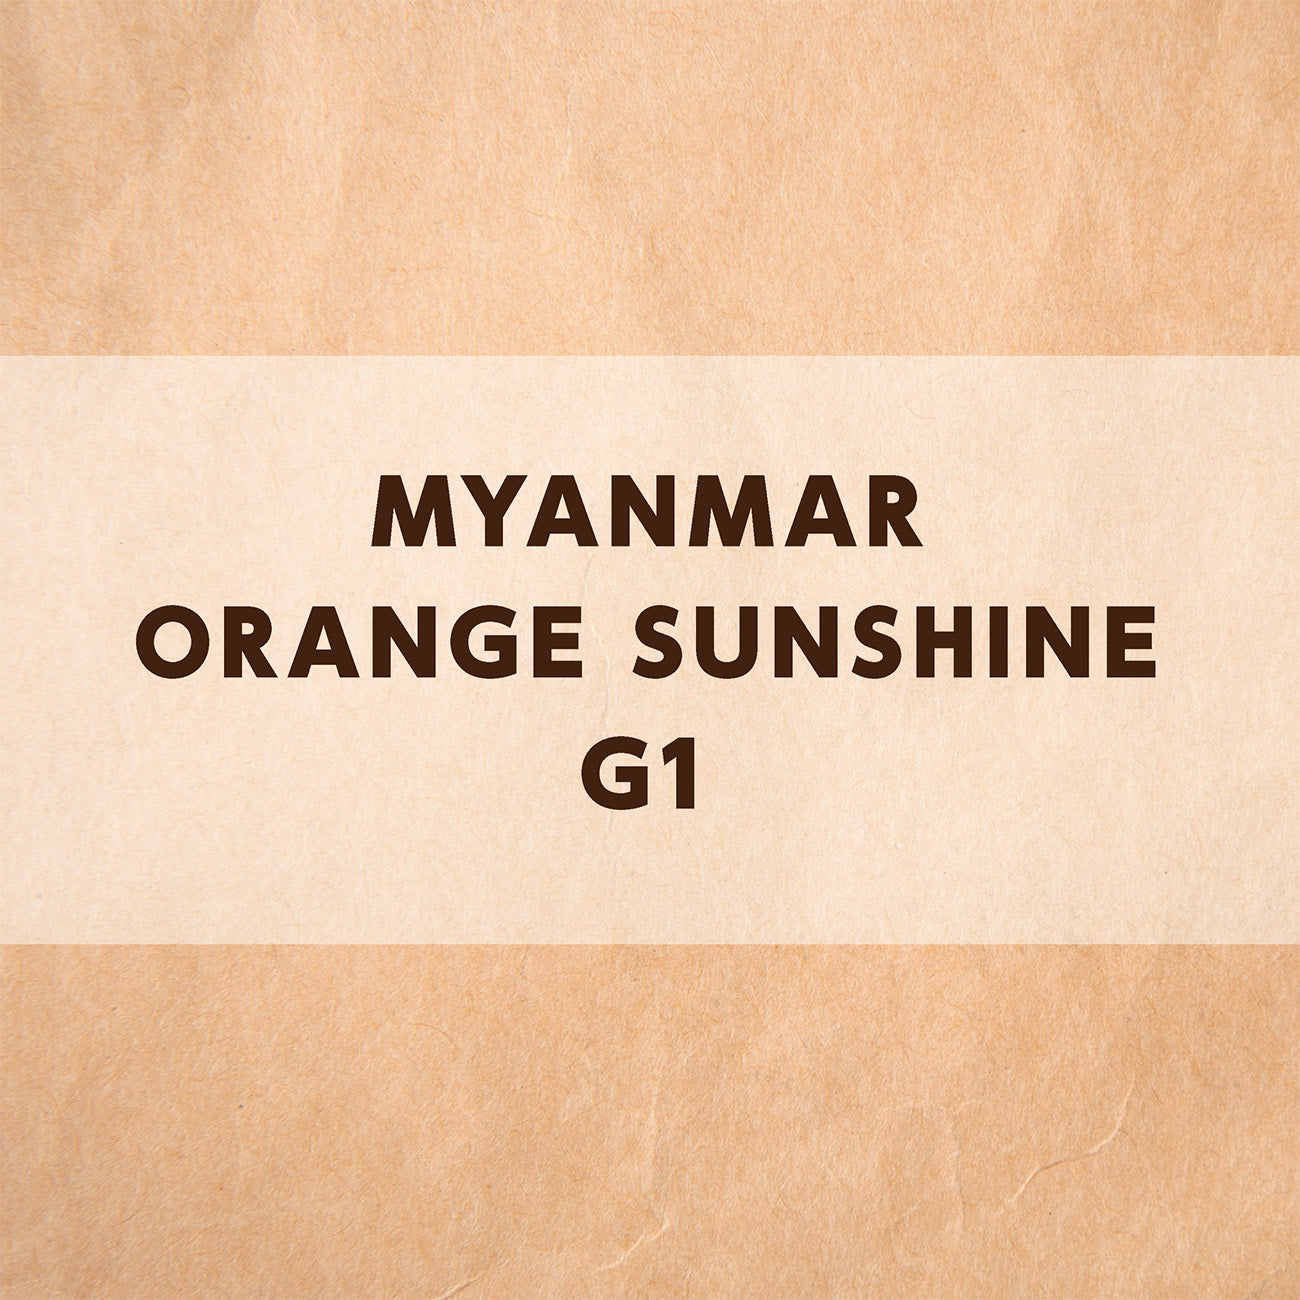 ミャンマー オレンジサンシャイン G1 シャン州ピンダヤ村